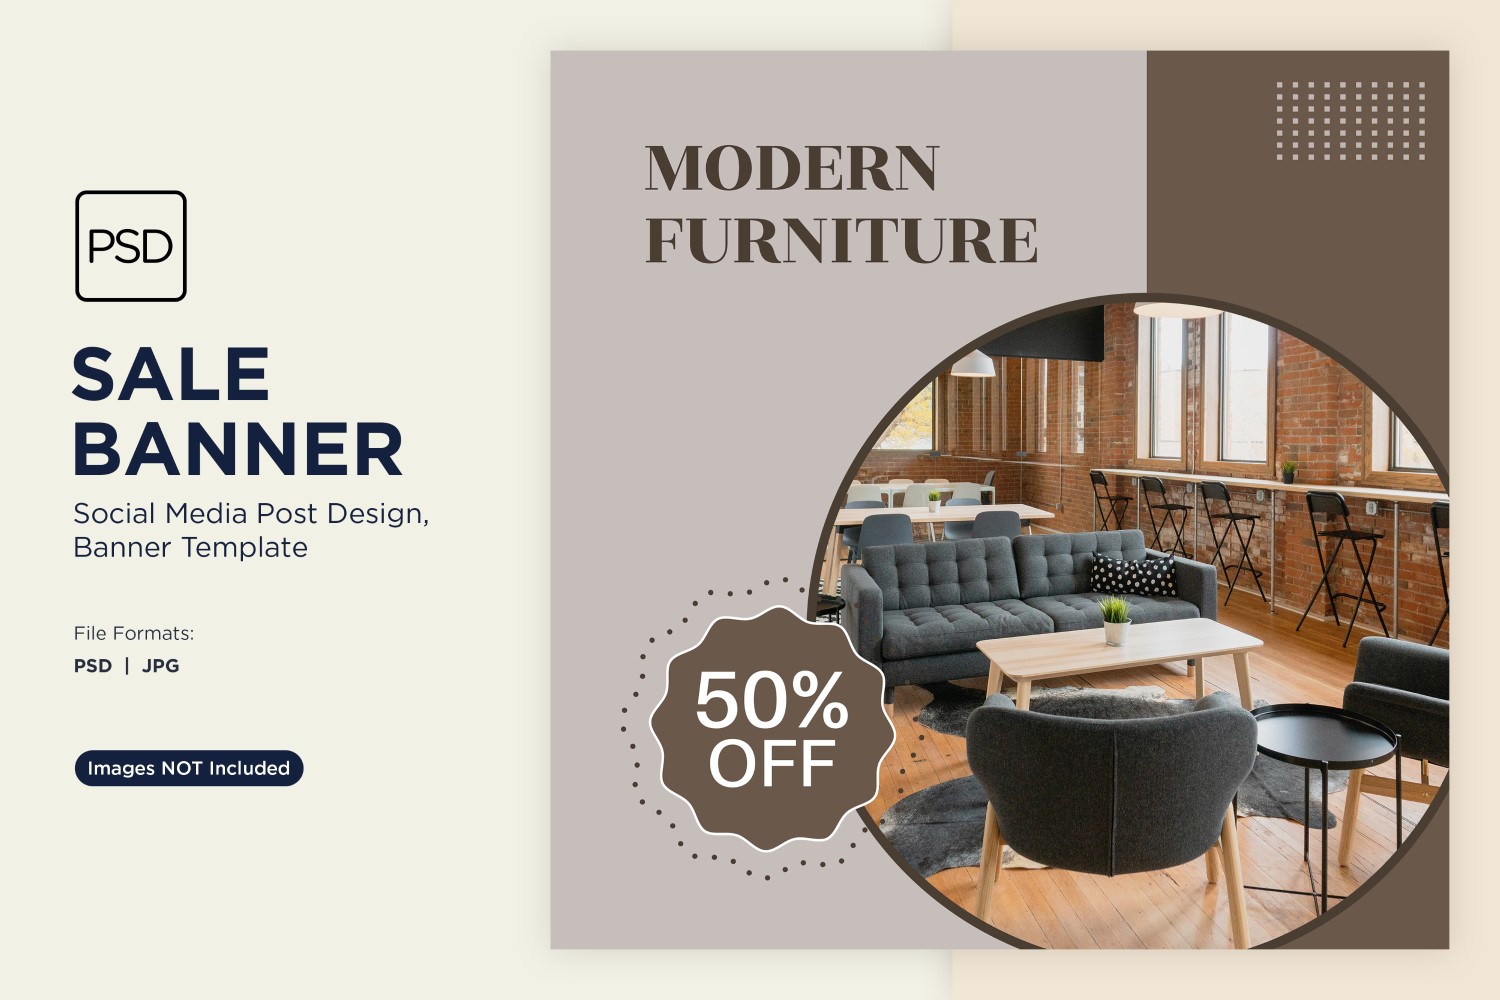 Big Sale on Modern Furniture Banner Design Template 1